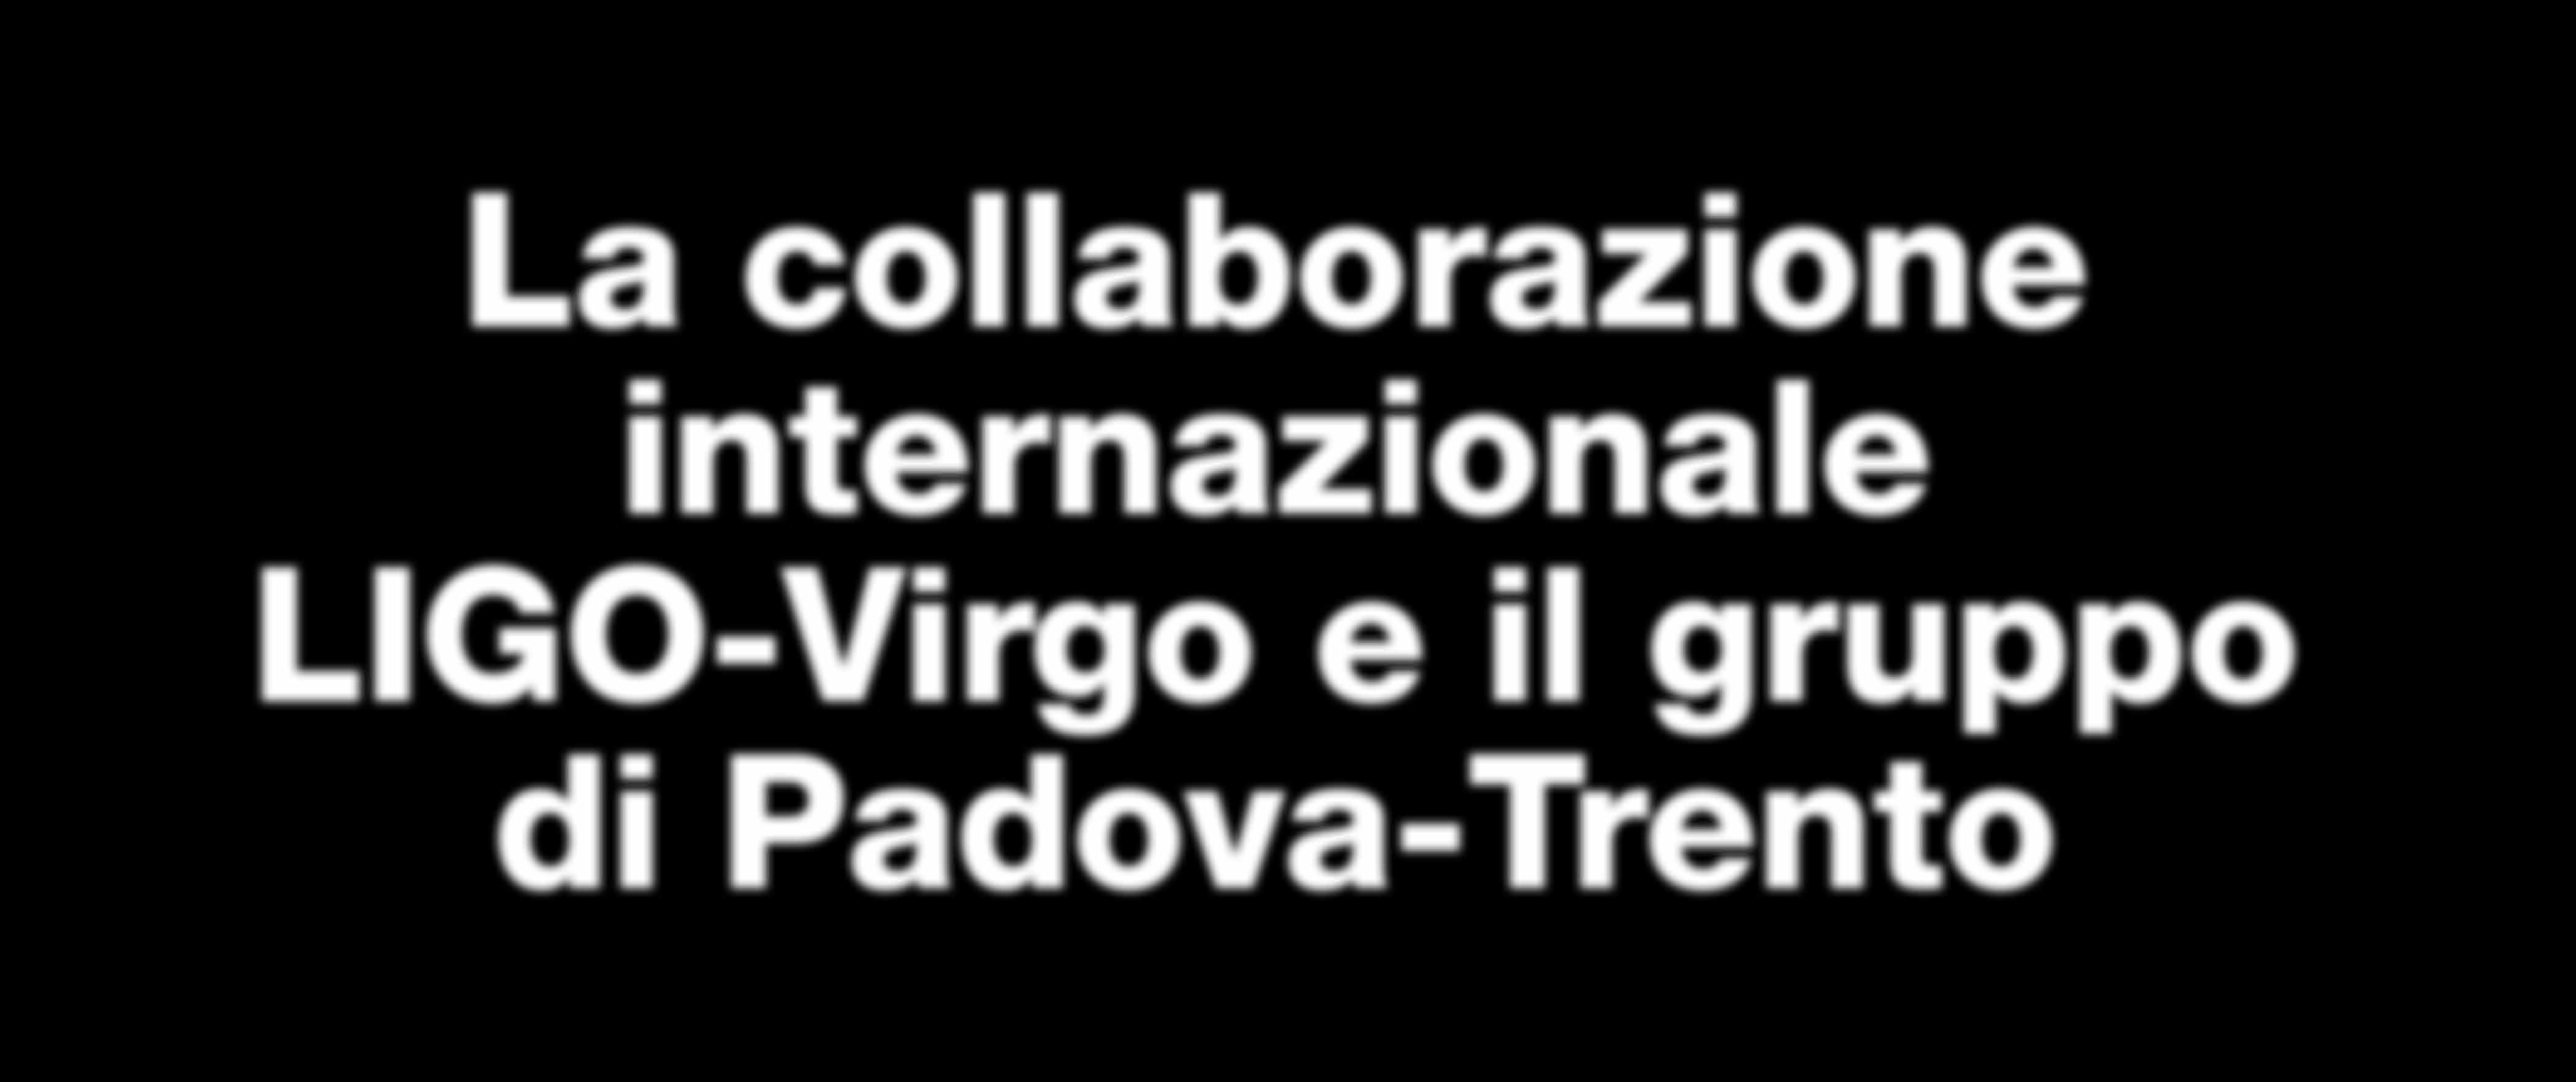 La collaborazione internazionale LIGO-Virgo e il gruppo di Padova-Trento Le ricerche di onde gravitazionali con interferometri sono condotte da una collaborazione mondiale che coinvolge oltre